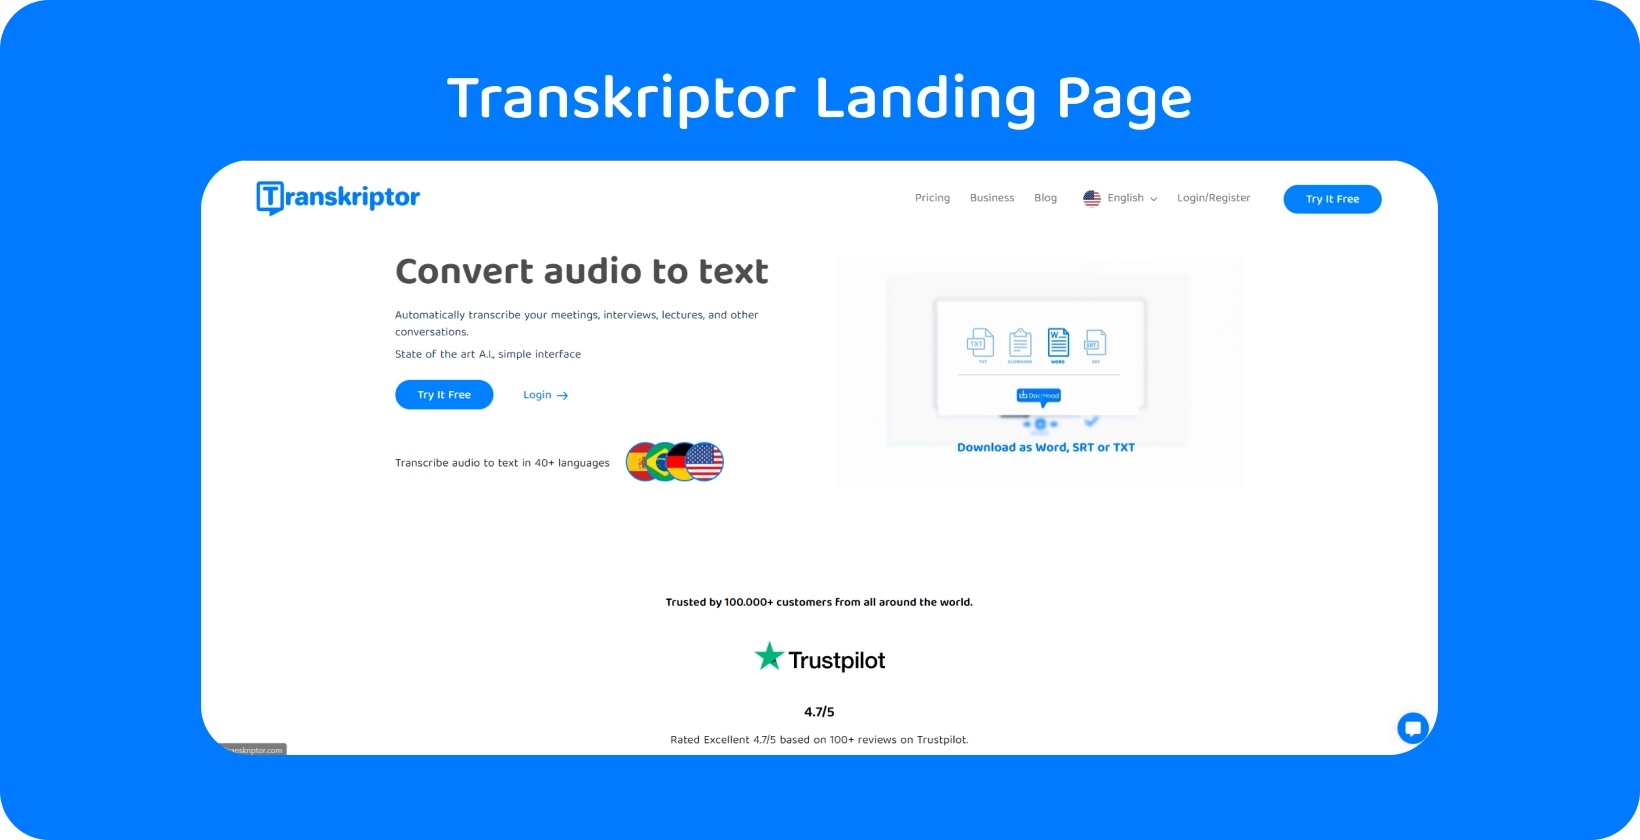 Animoitu työtila, jossa on Transkriptor-logo, joka kuvaa tekstityksen kääntämistä tietokoneella.